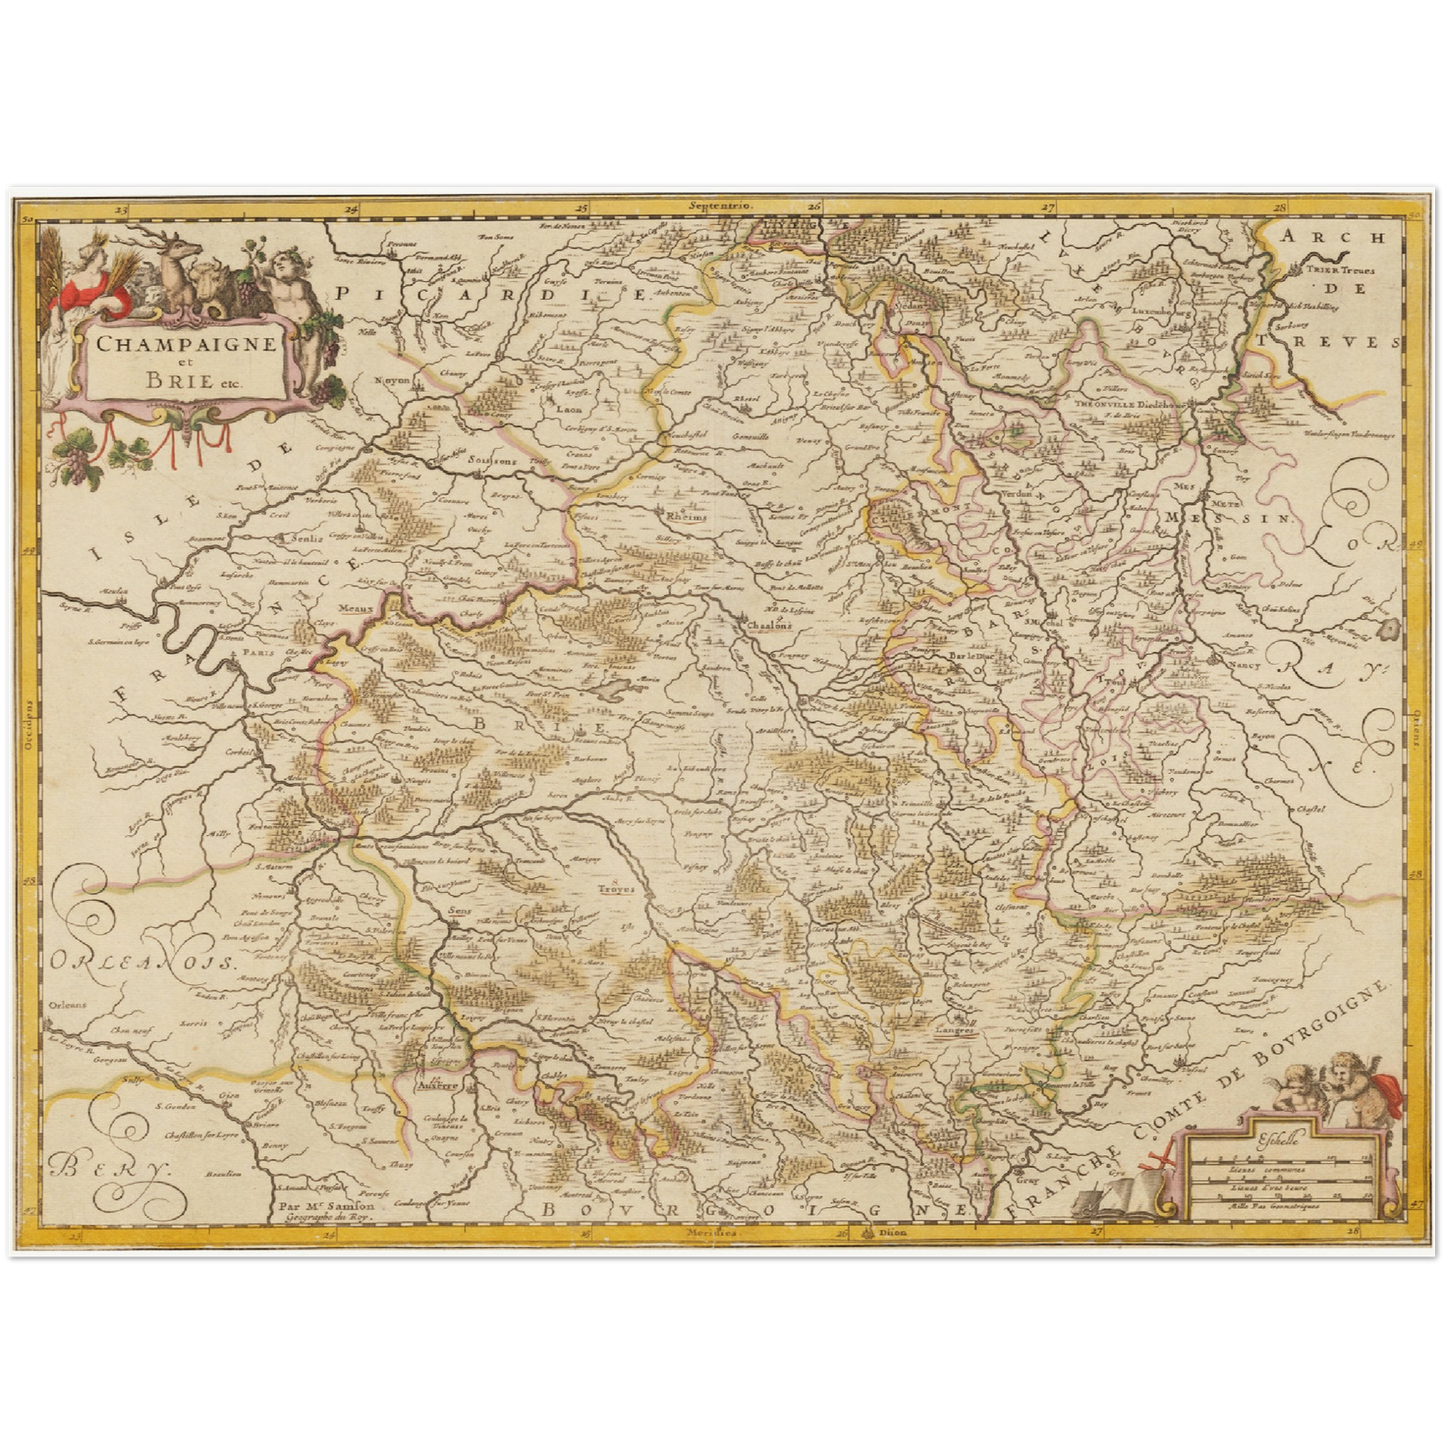 Historische Landkarte Champagne um 1698